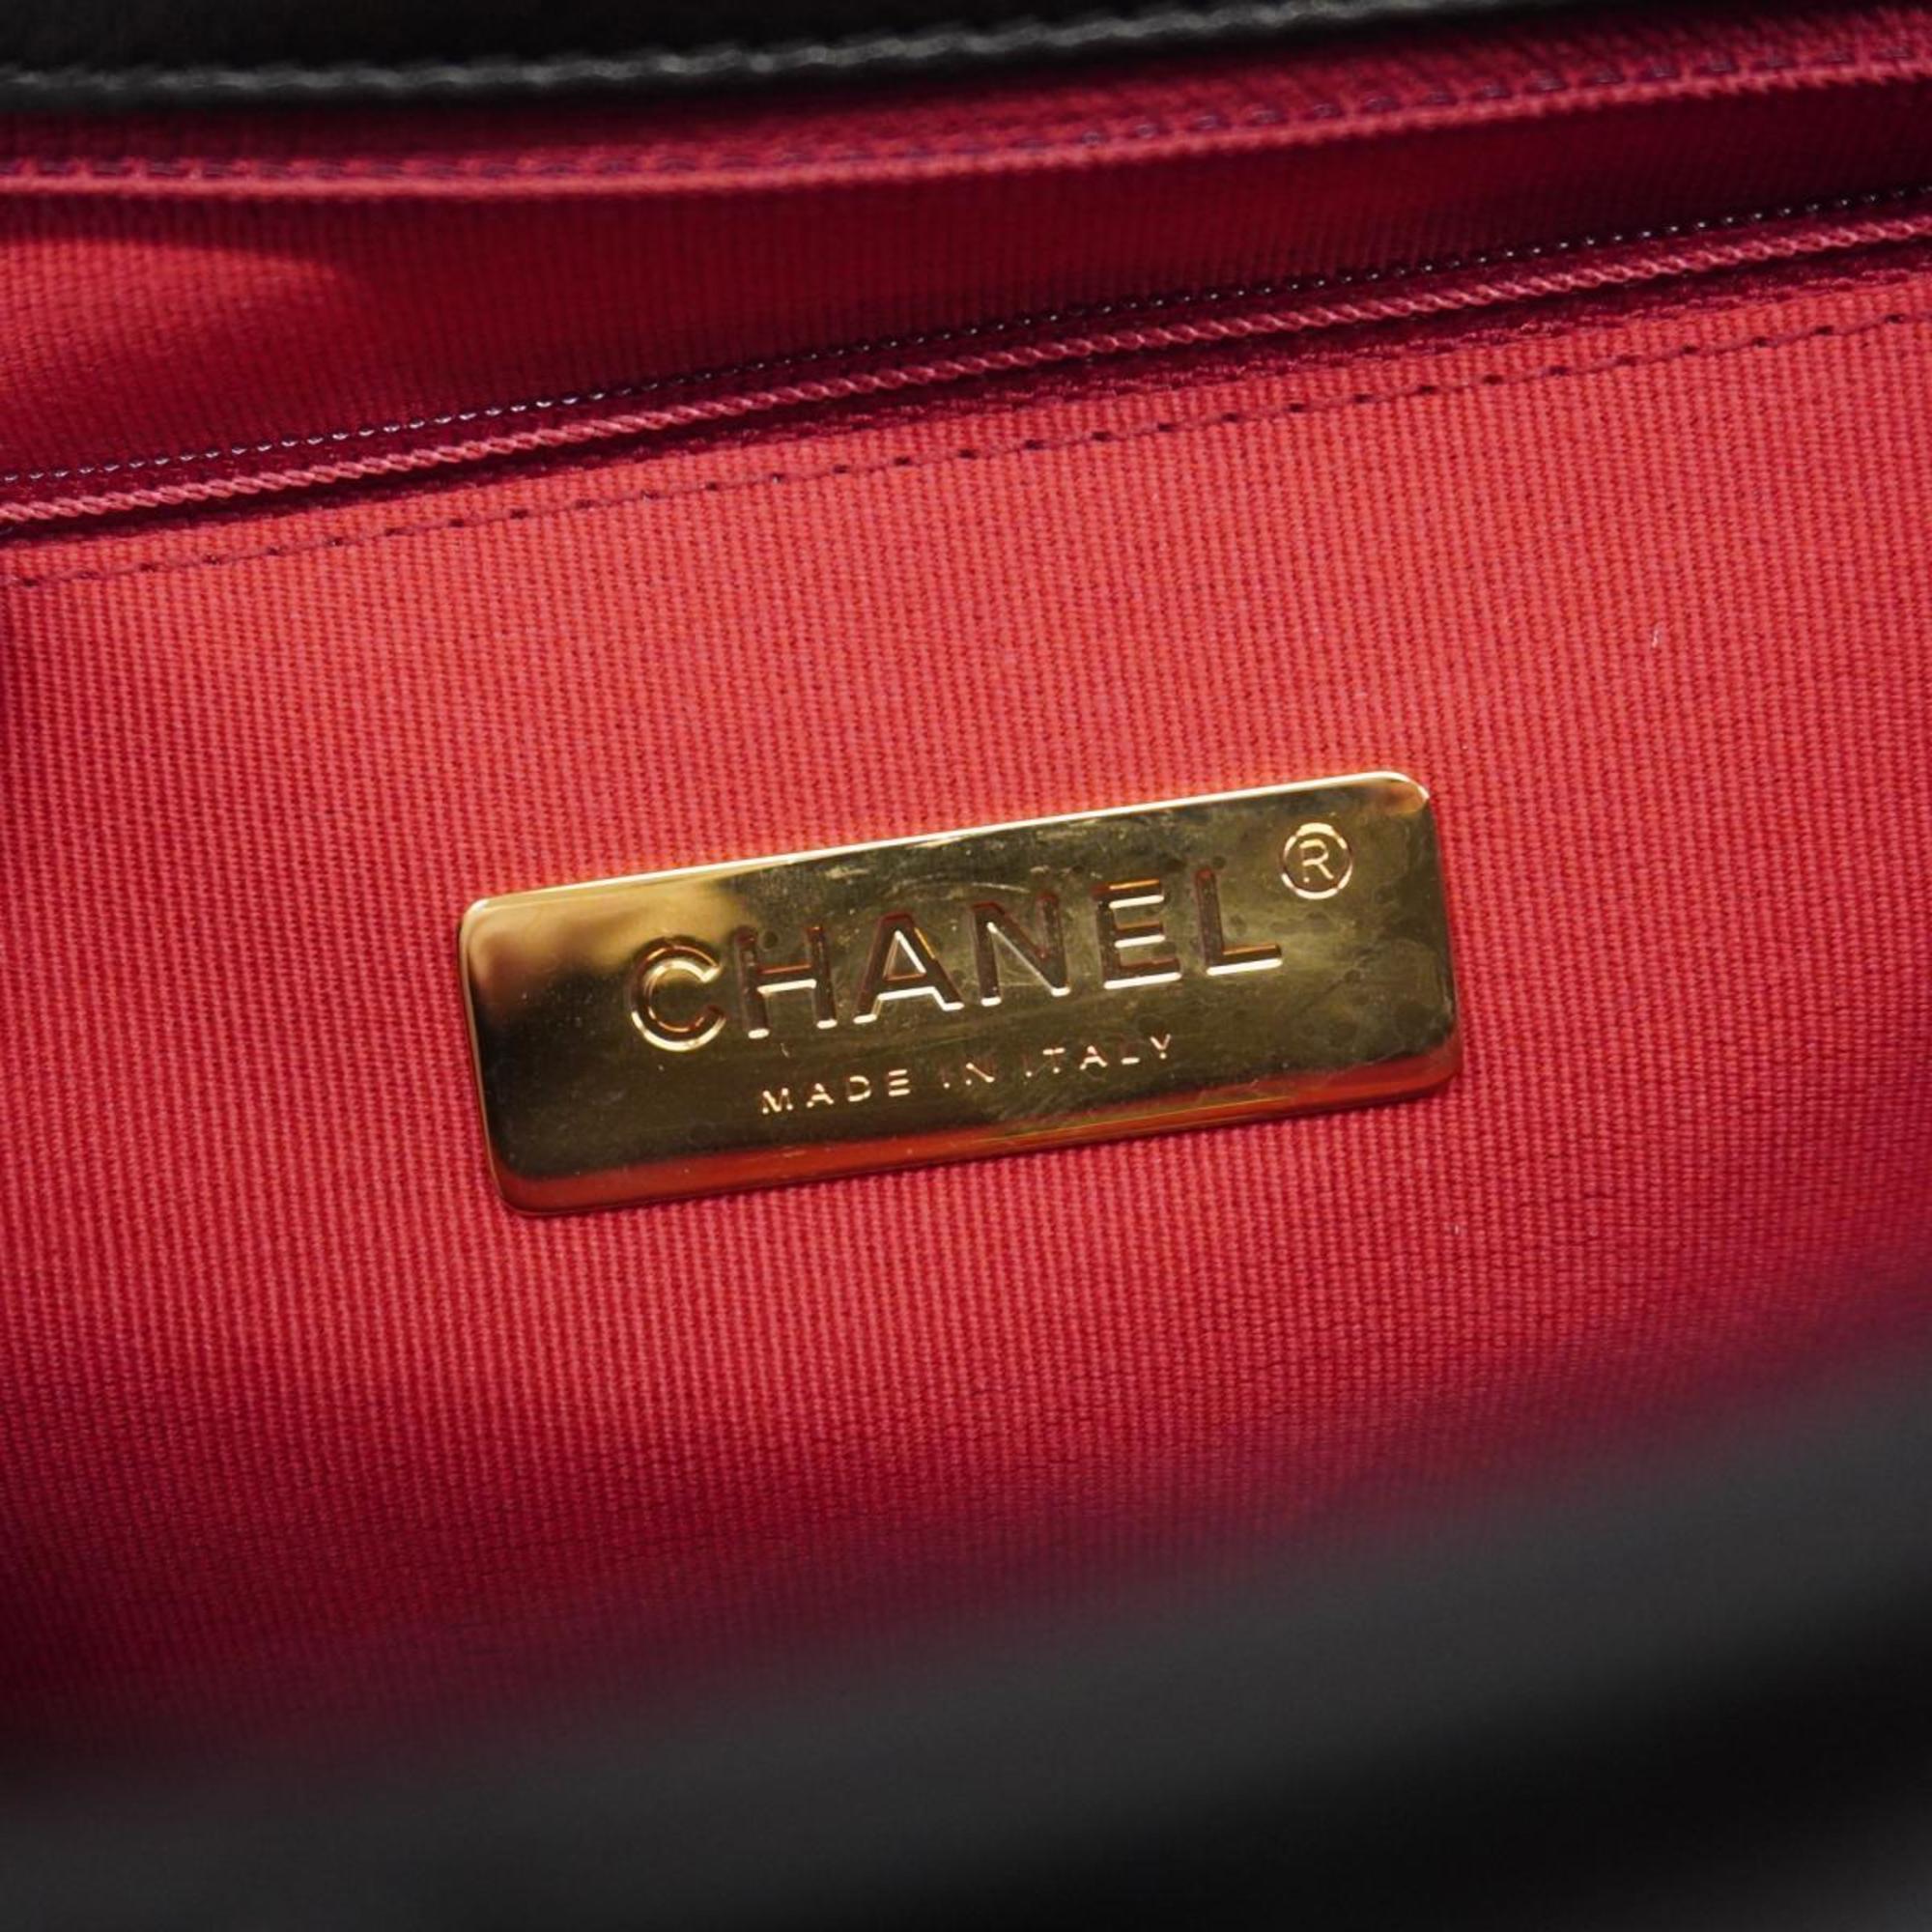 シャネル(Chanel) シャネル ハンドバッグ シャネル19 チェーンショルダー ラムスキン ブラック   レディース